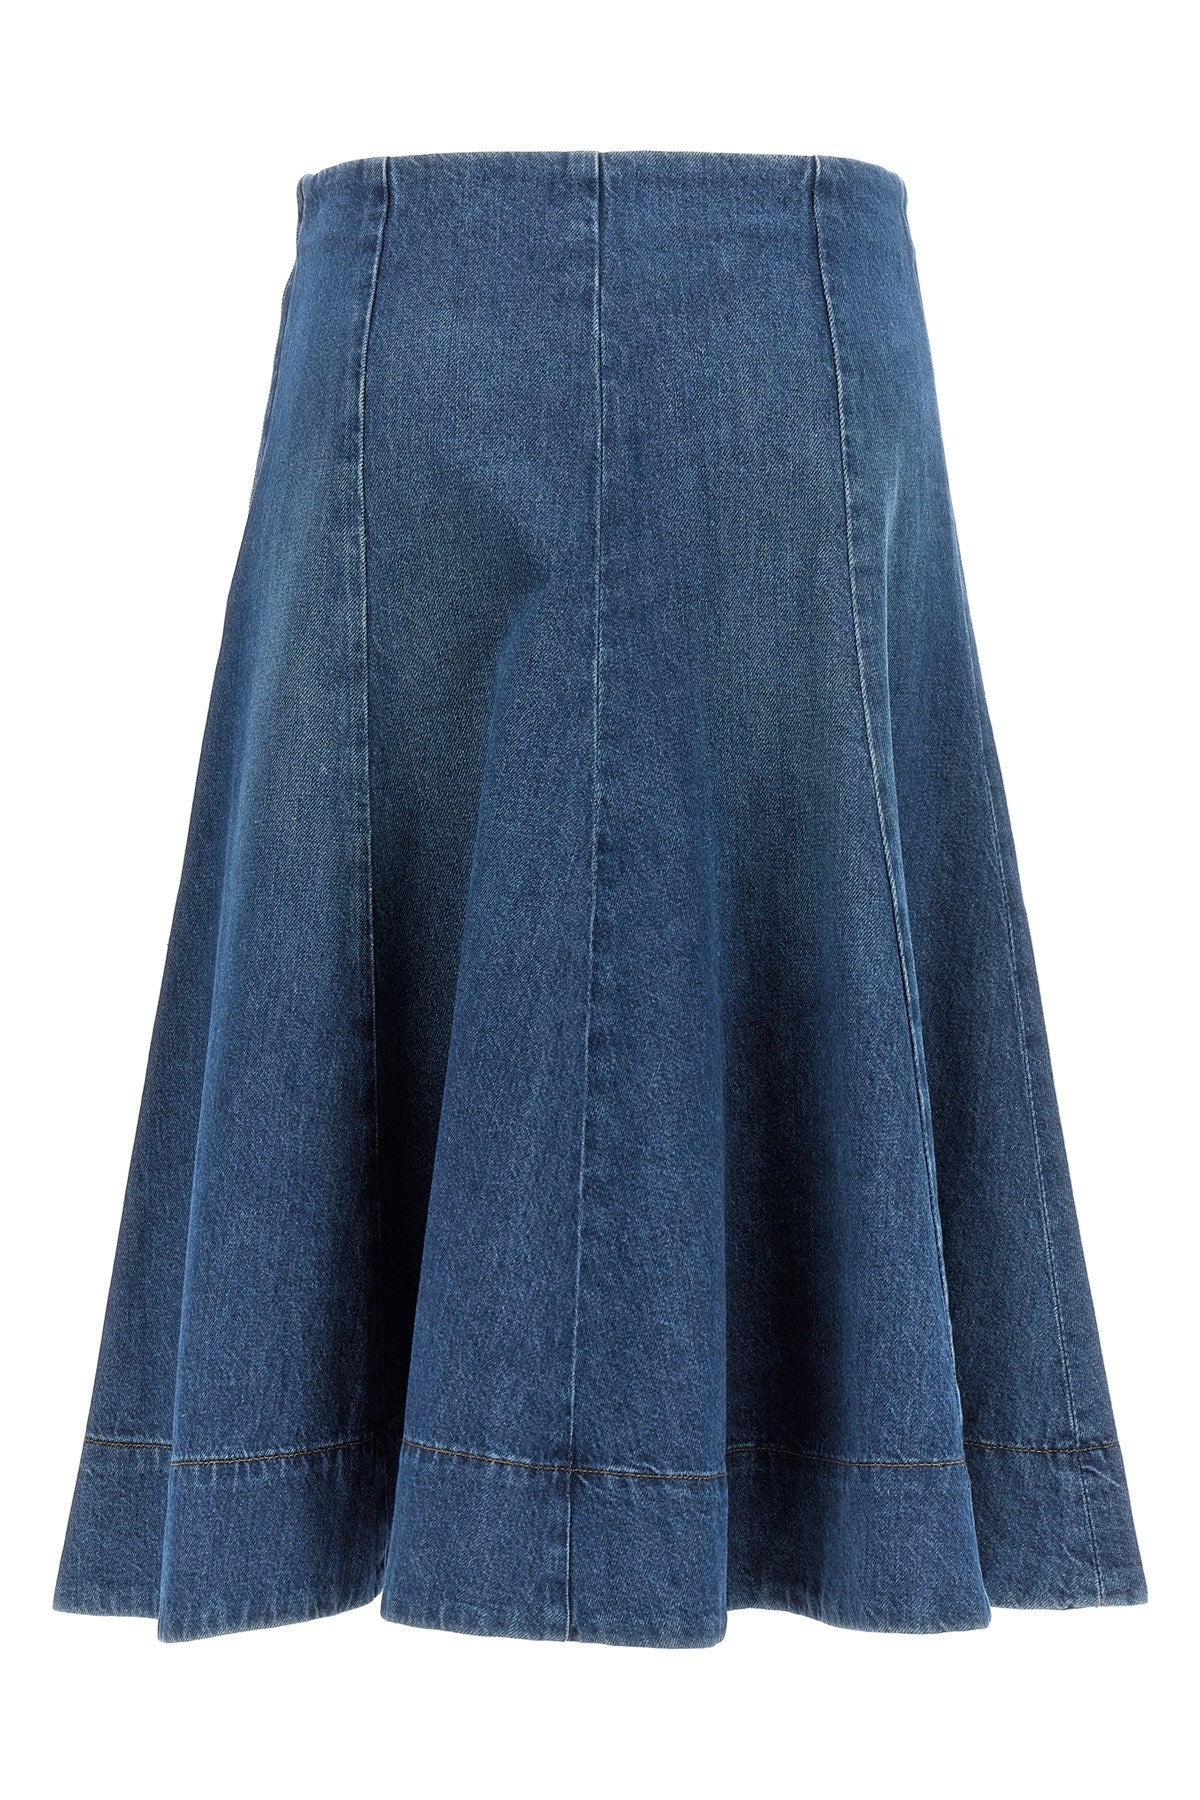 Khaite Women 'Lennox' Skirt - 3